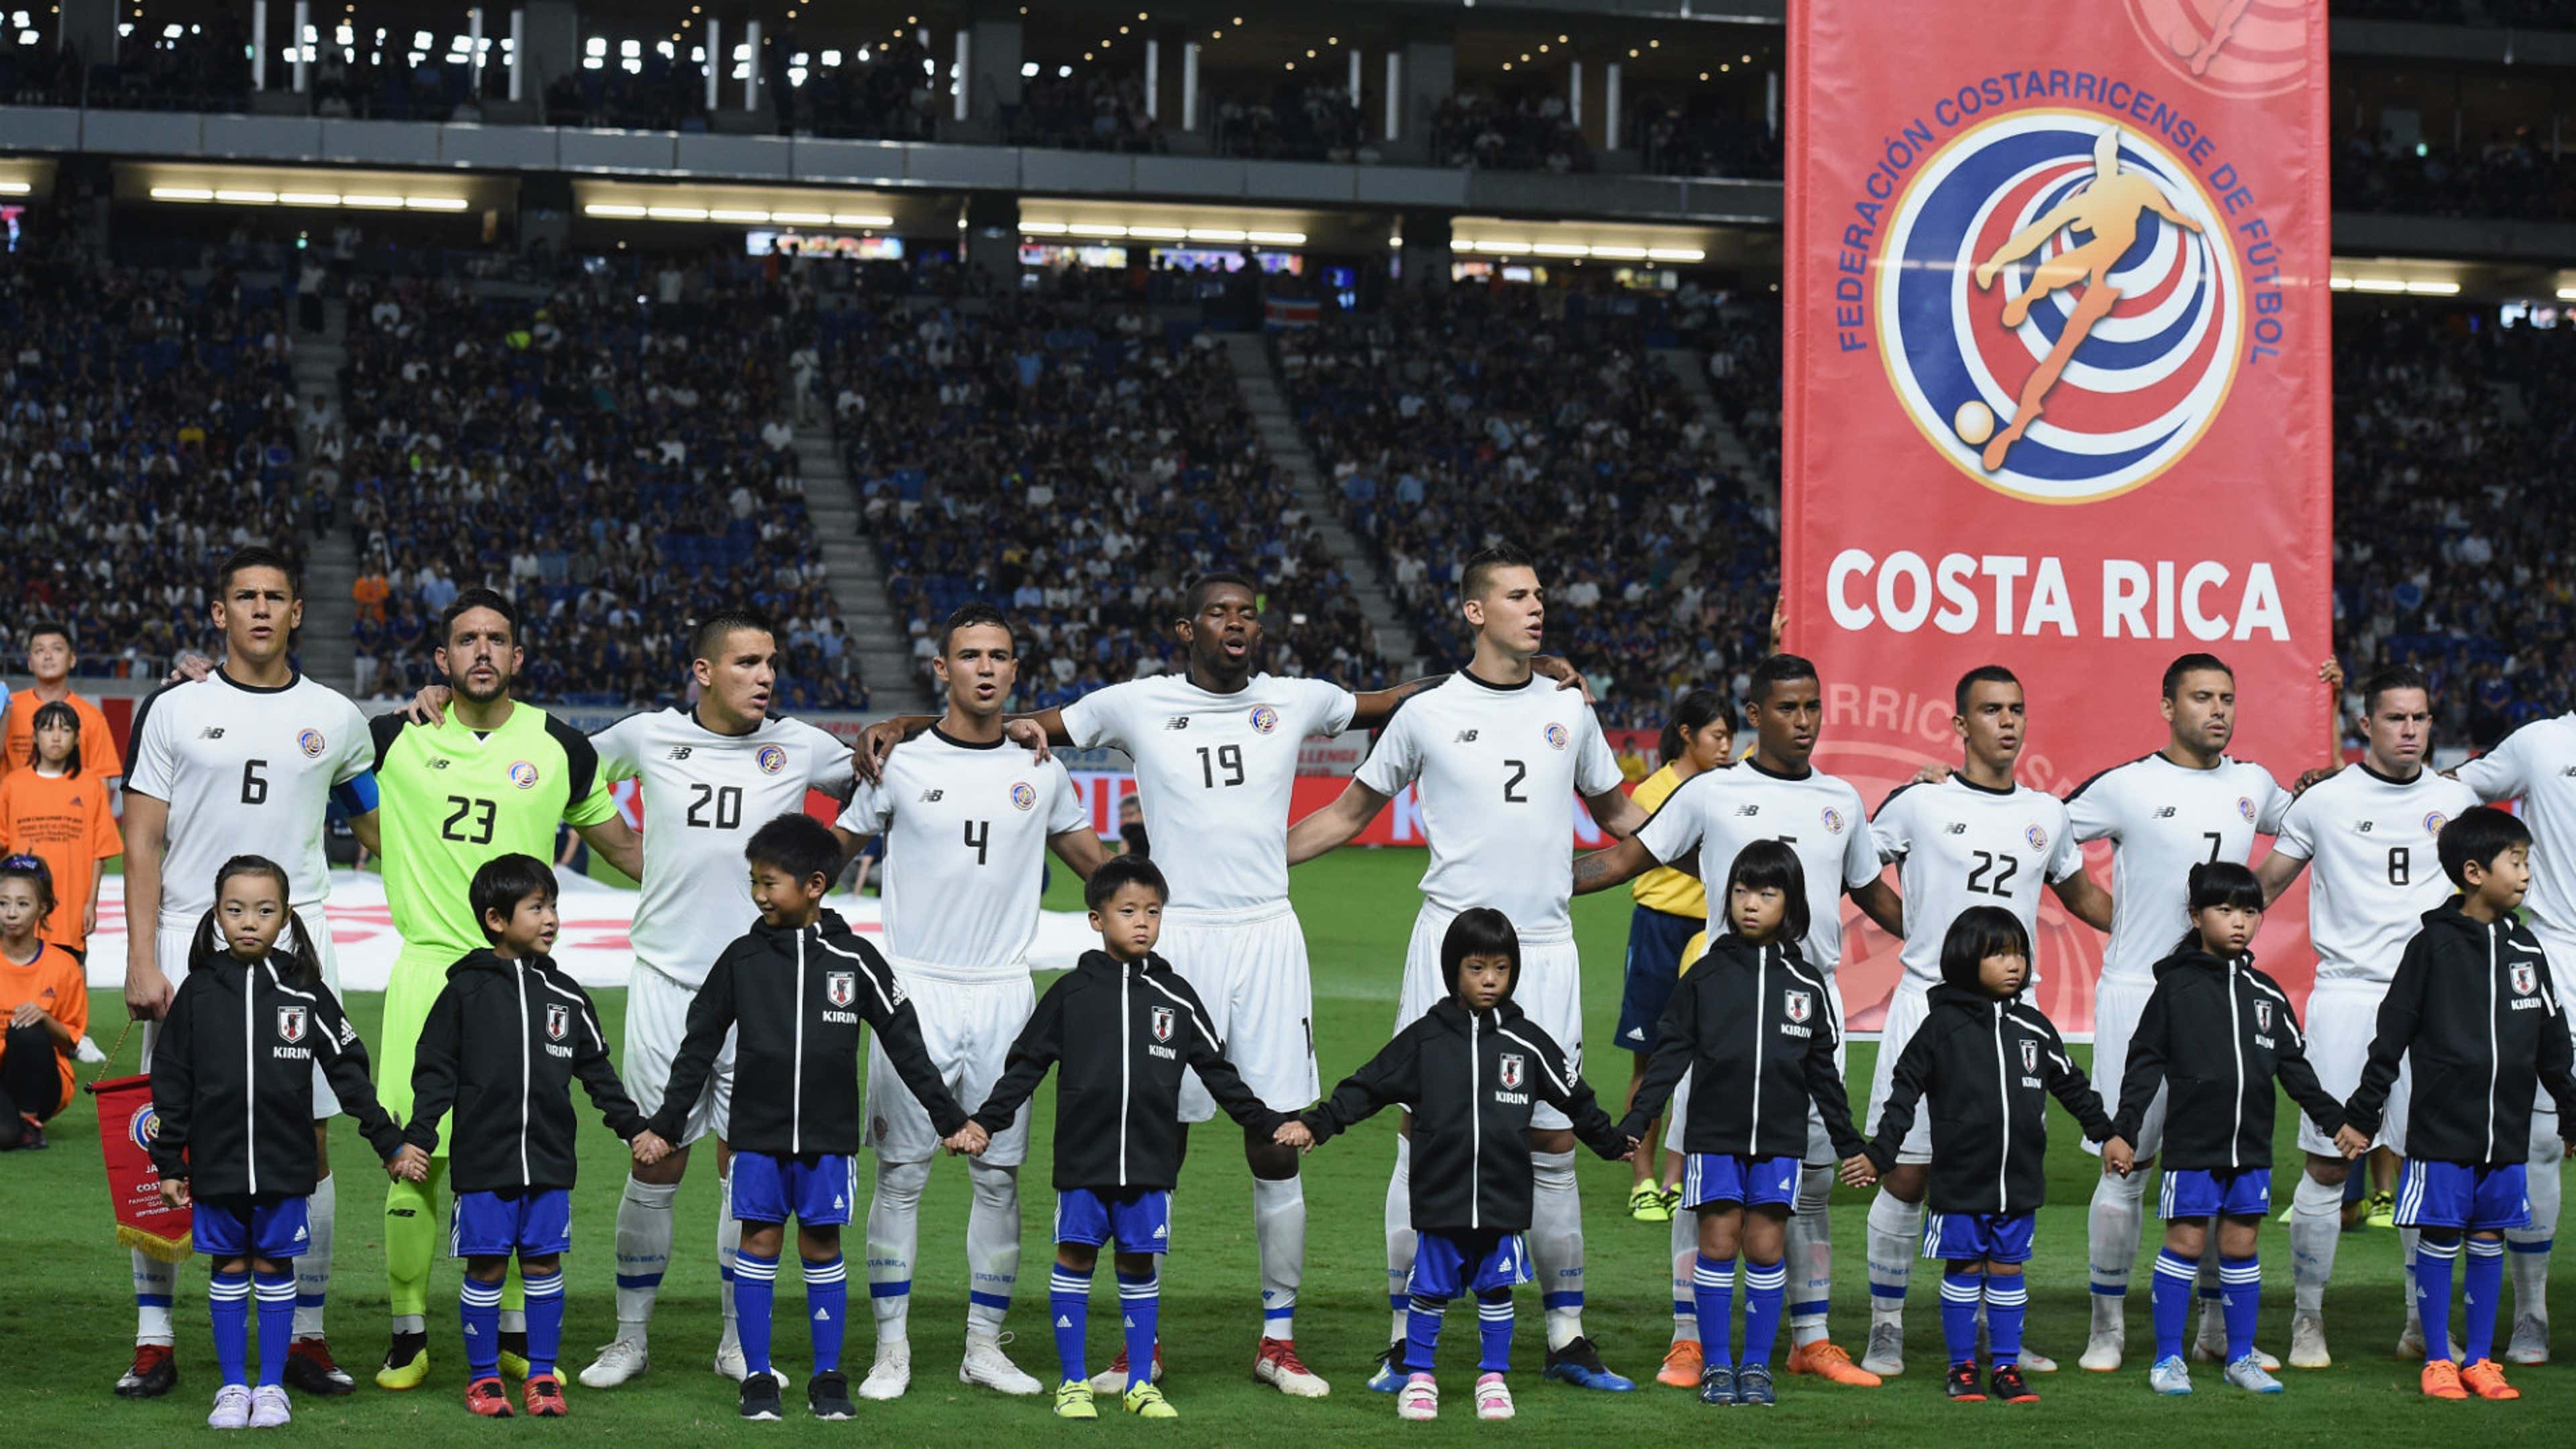 Costa Rica vs Japón 2018